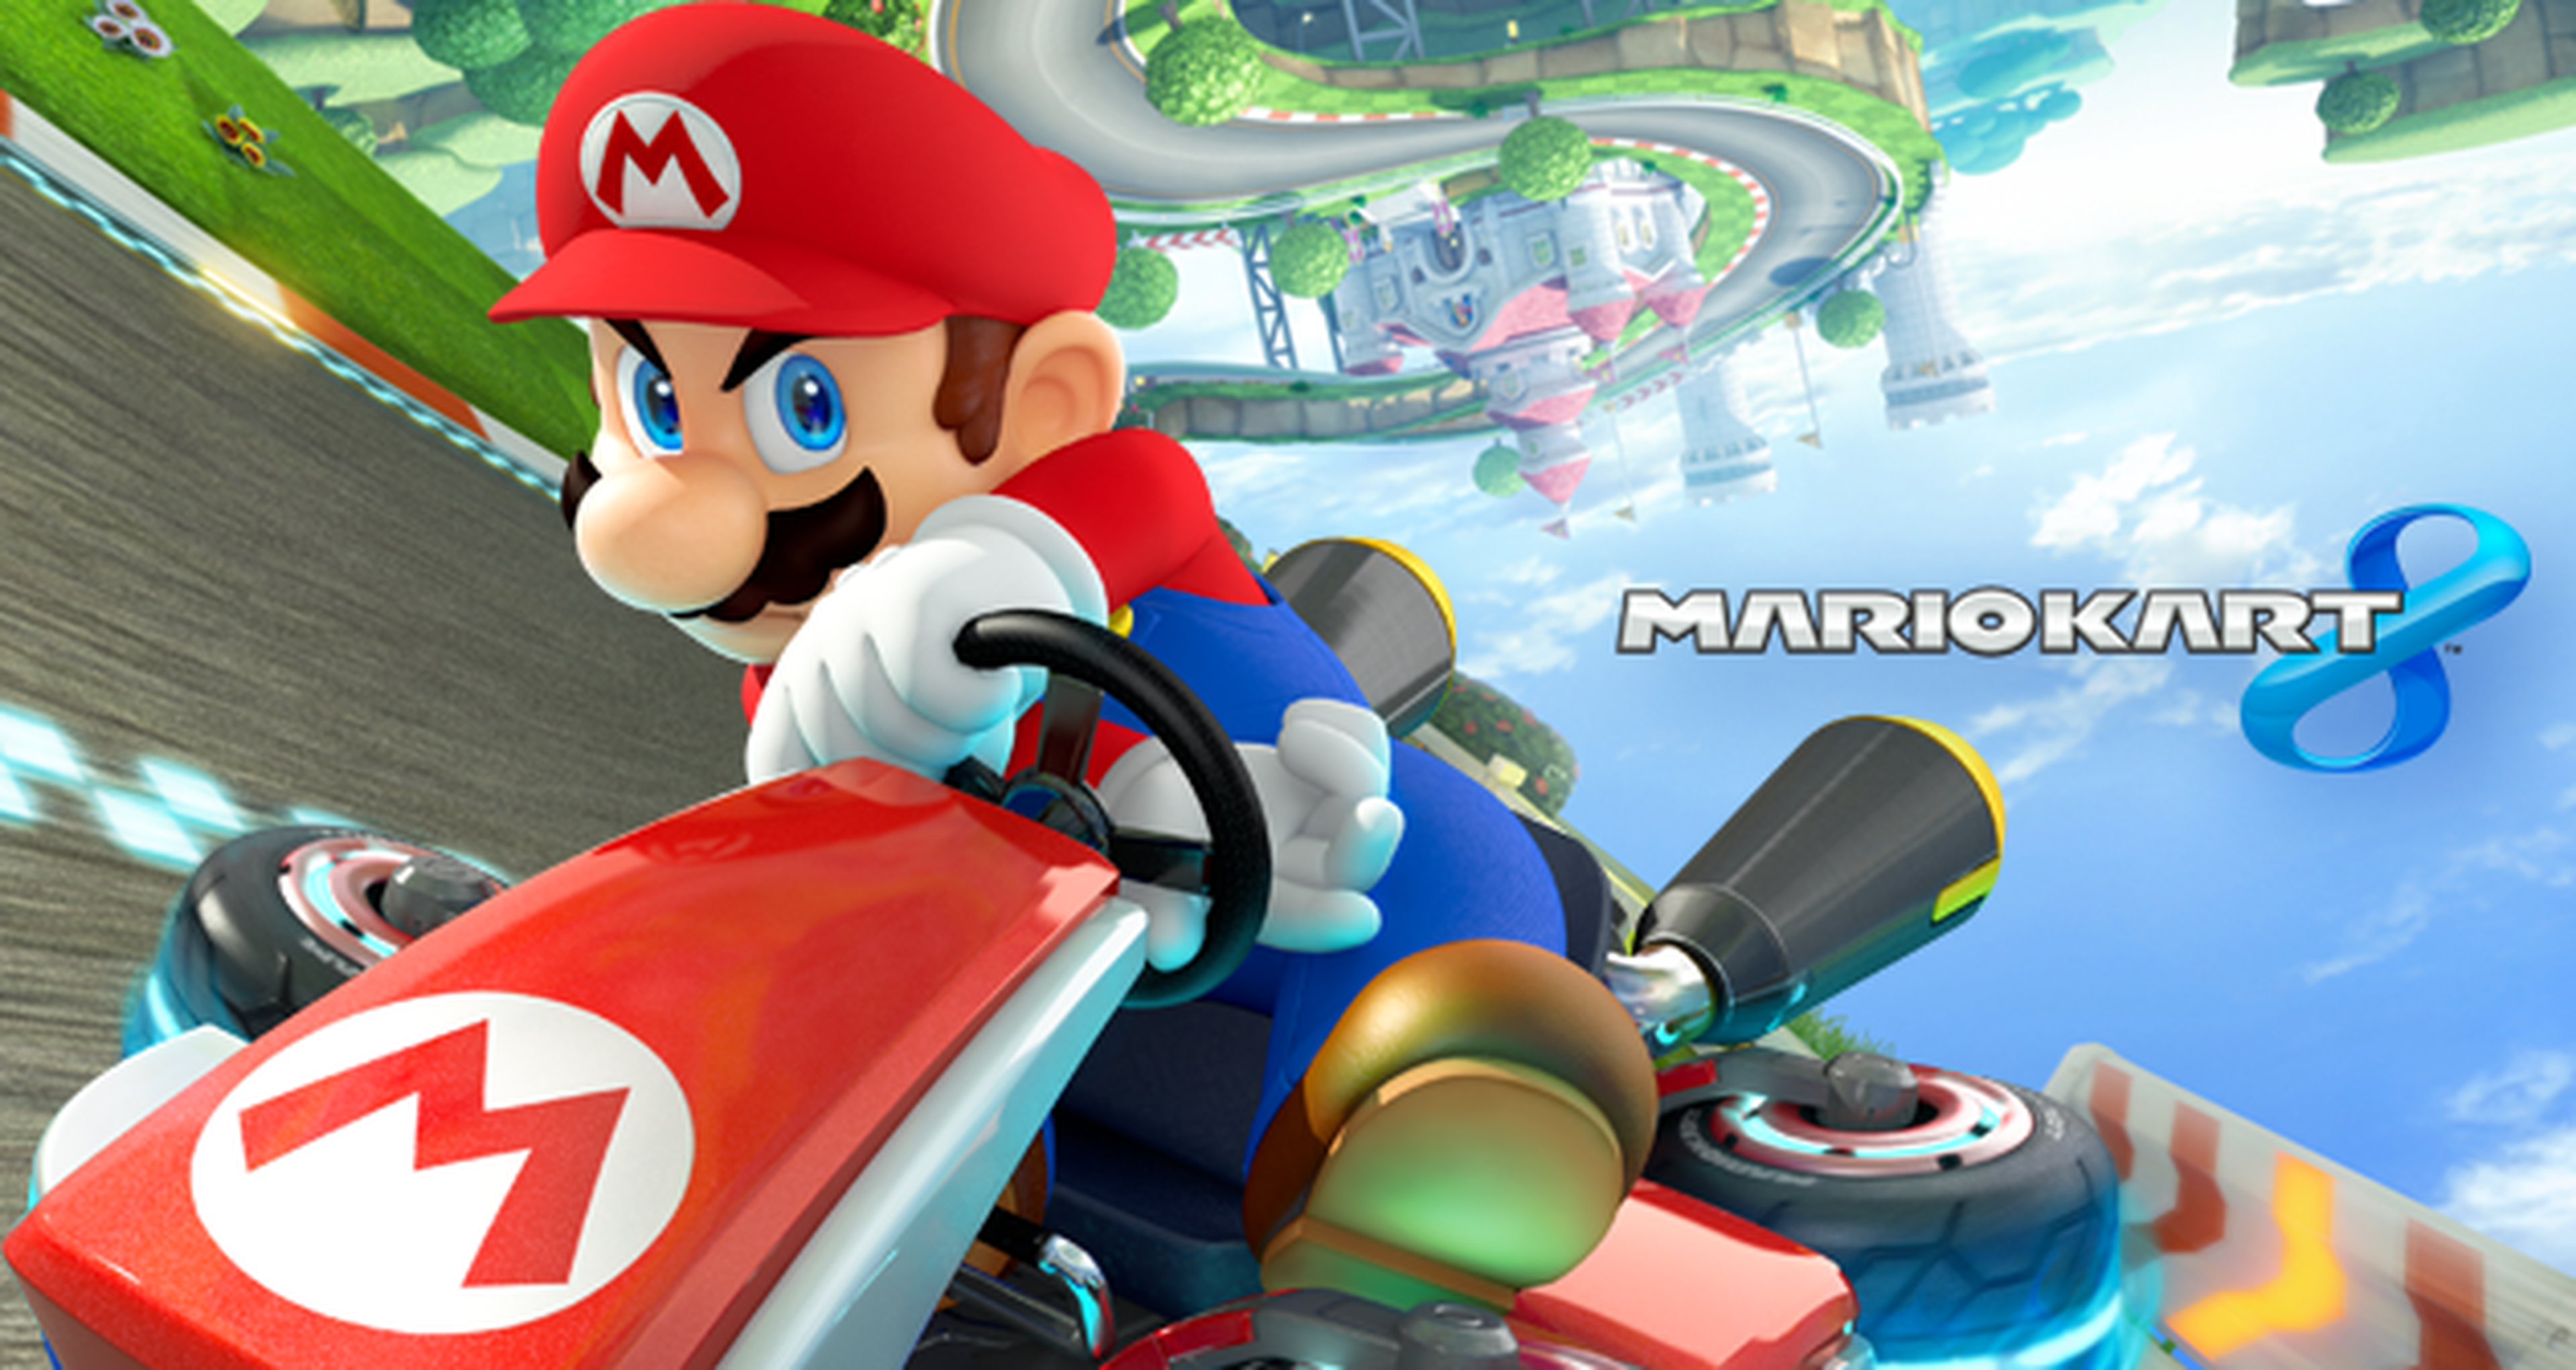 Torneo Mario Kart 8 a 200cc: Resultados Semana 3 y Convocatoria Semana 4